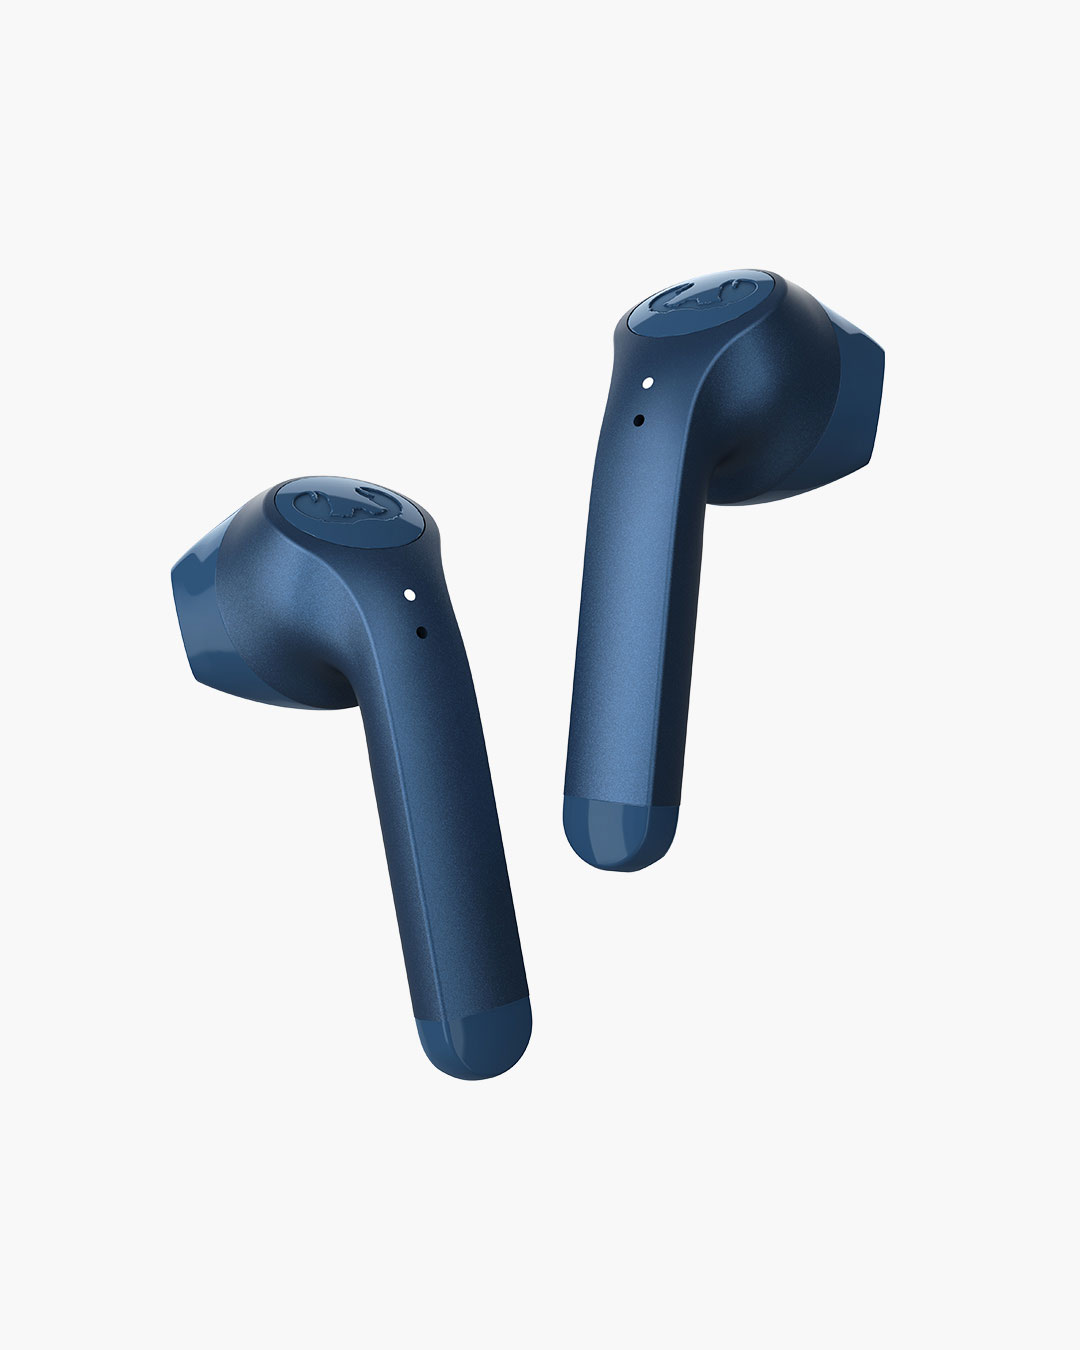 Fresh 'n Rebel - Twins 3 - True Wireless In-ear headphones - Steel Blue